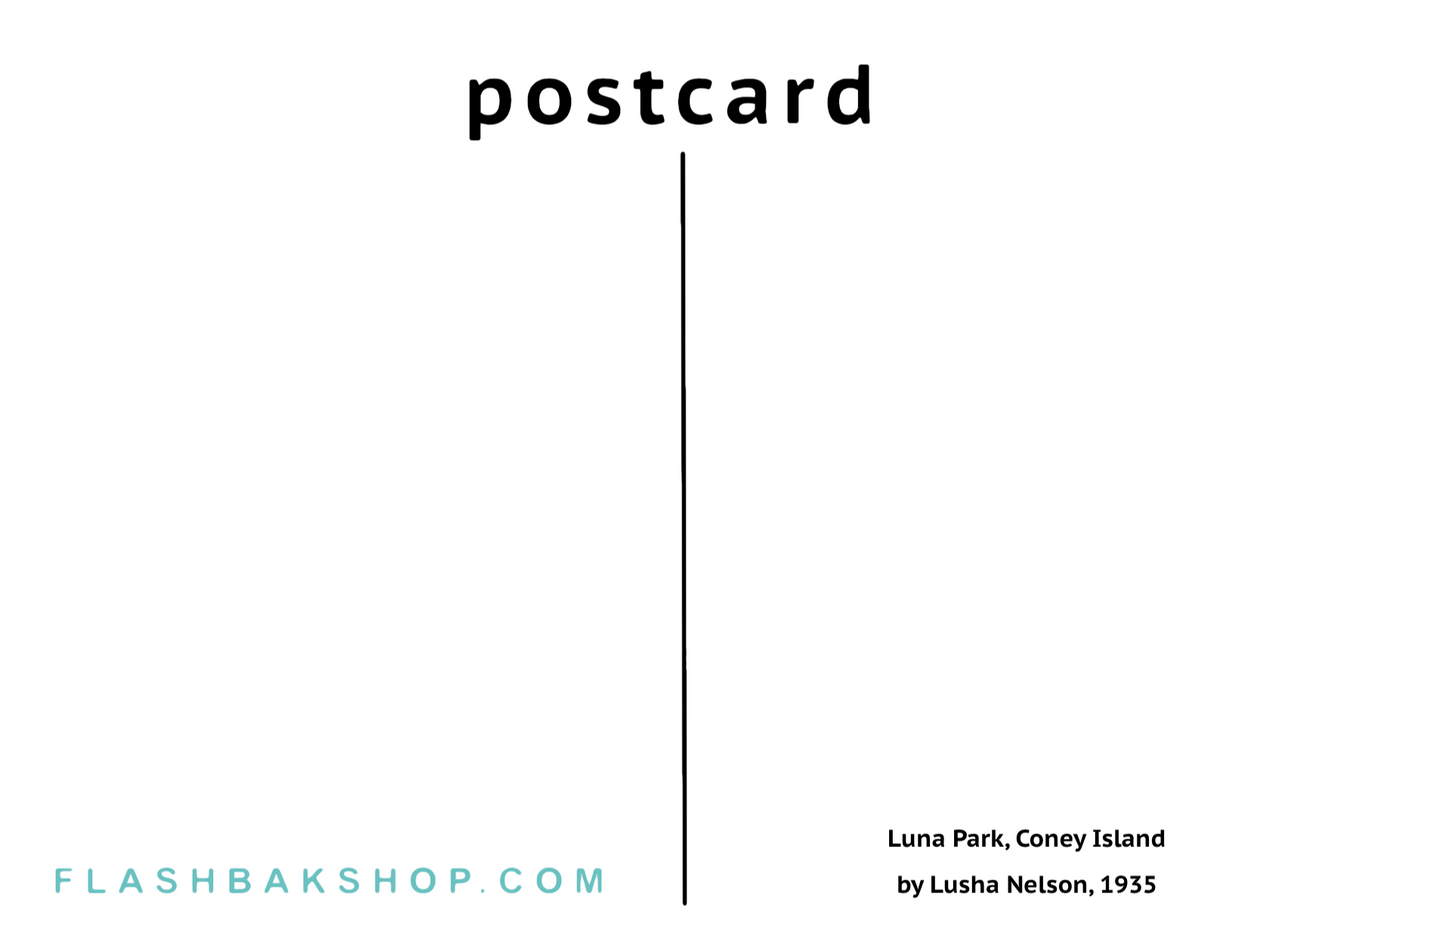 Luna Park, Coney Island par Lusha Nelson, 1935 - Carte postale